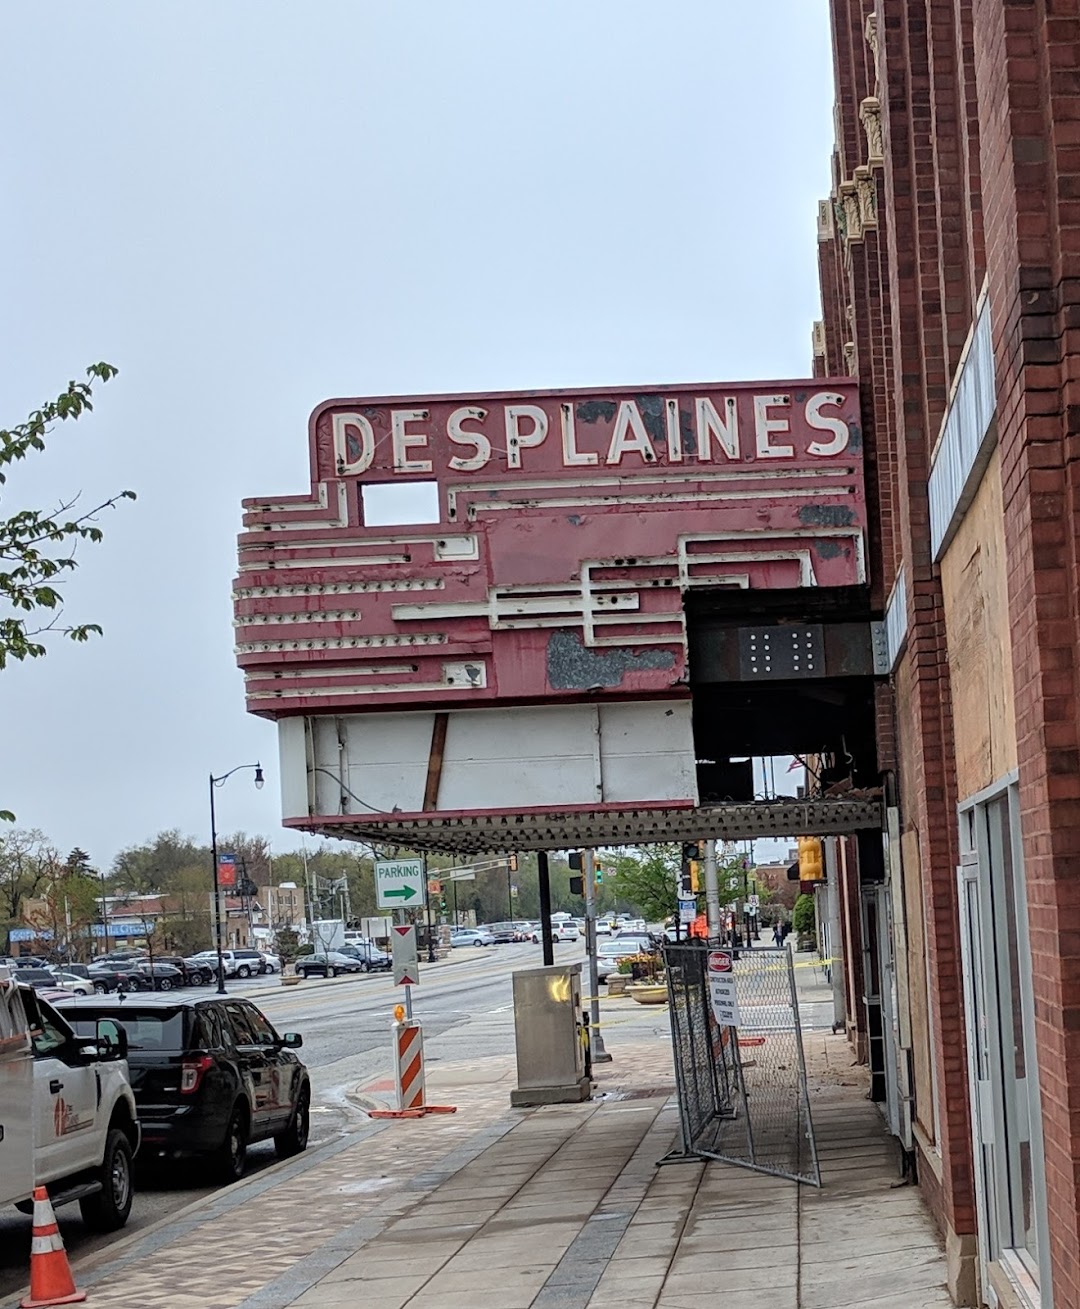 The Des Plaines Theatre